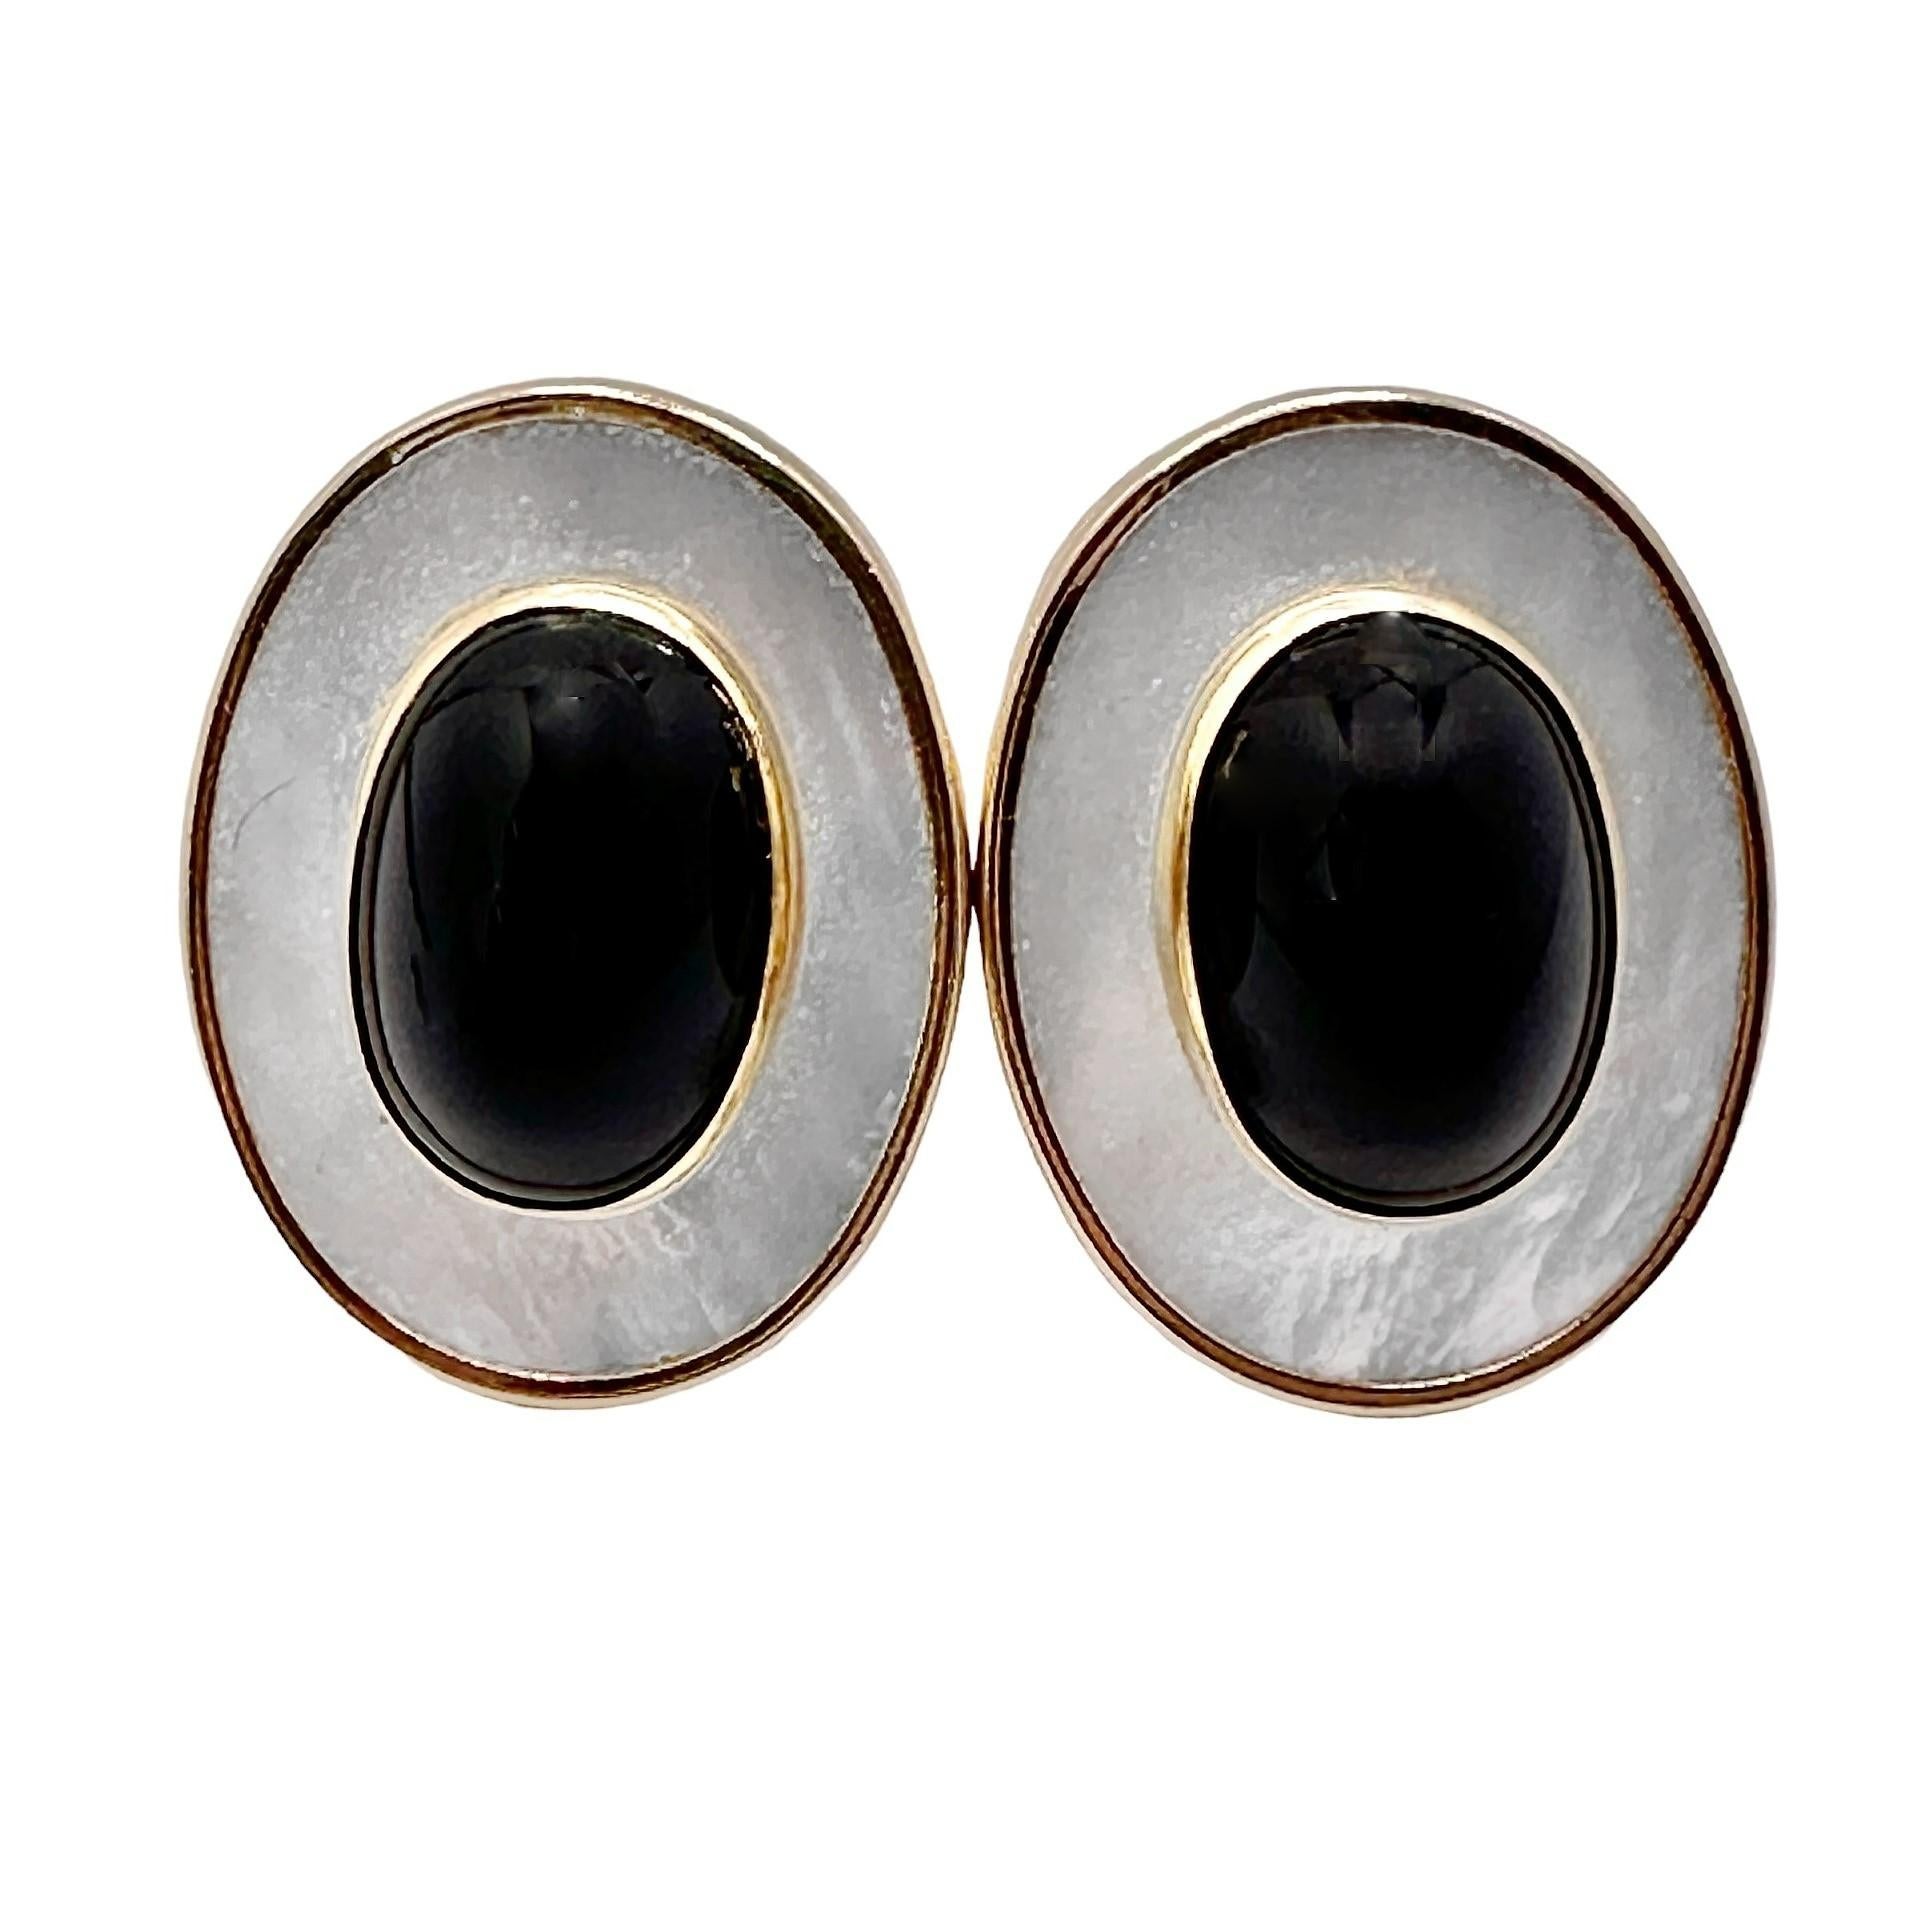 Dieses Paar sehr ästhetischer und solide konstruierter Ohrringe aus 14-karätigem Gelbgold besticht durch zwei Onyx-Cabochons in Lünetten auf einem Hintergrund aus leuchtendem Perlmutt. Sie sind leicht und angenehm zu tragen. Die Ohrringe messen 1